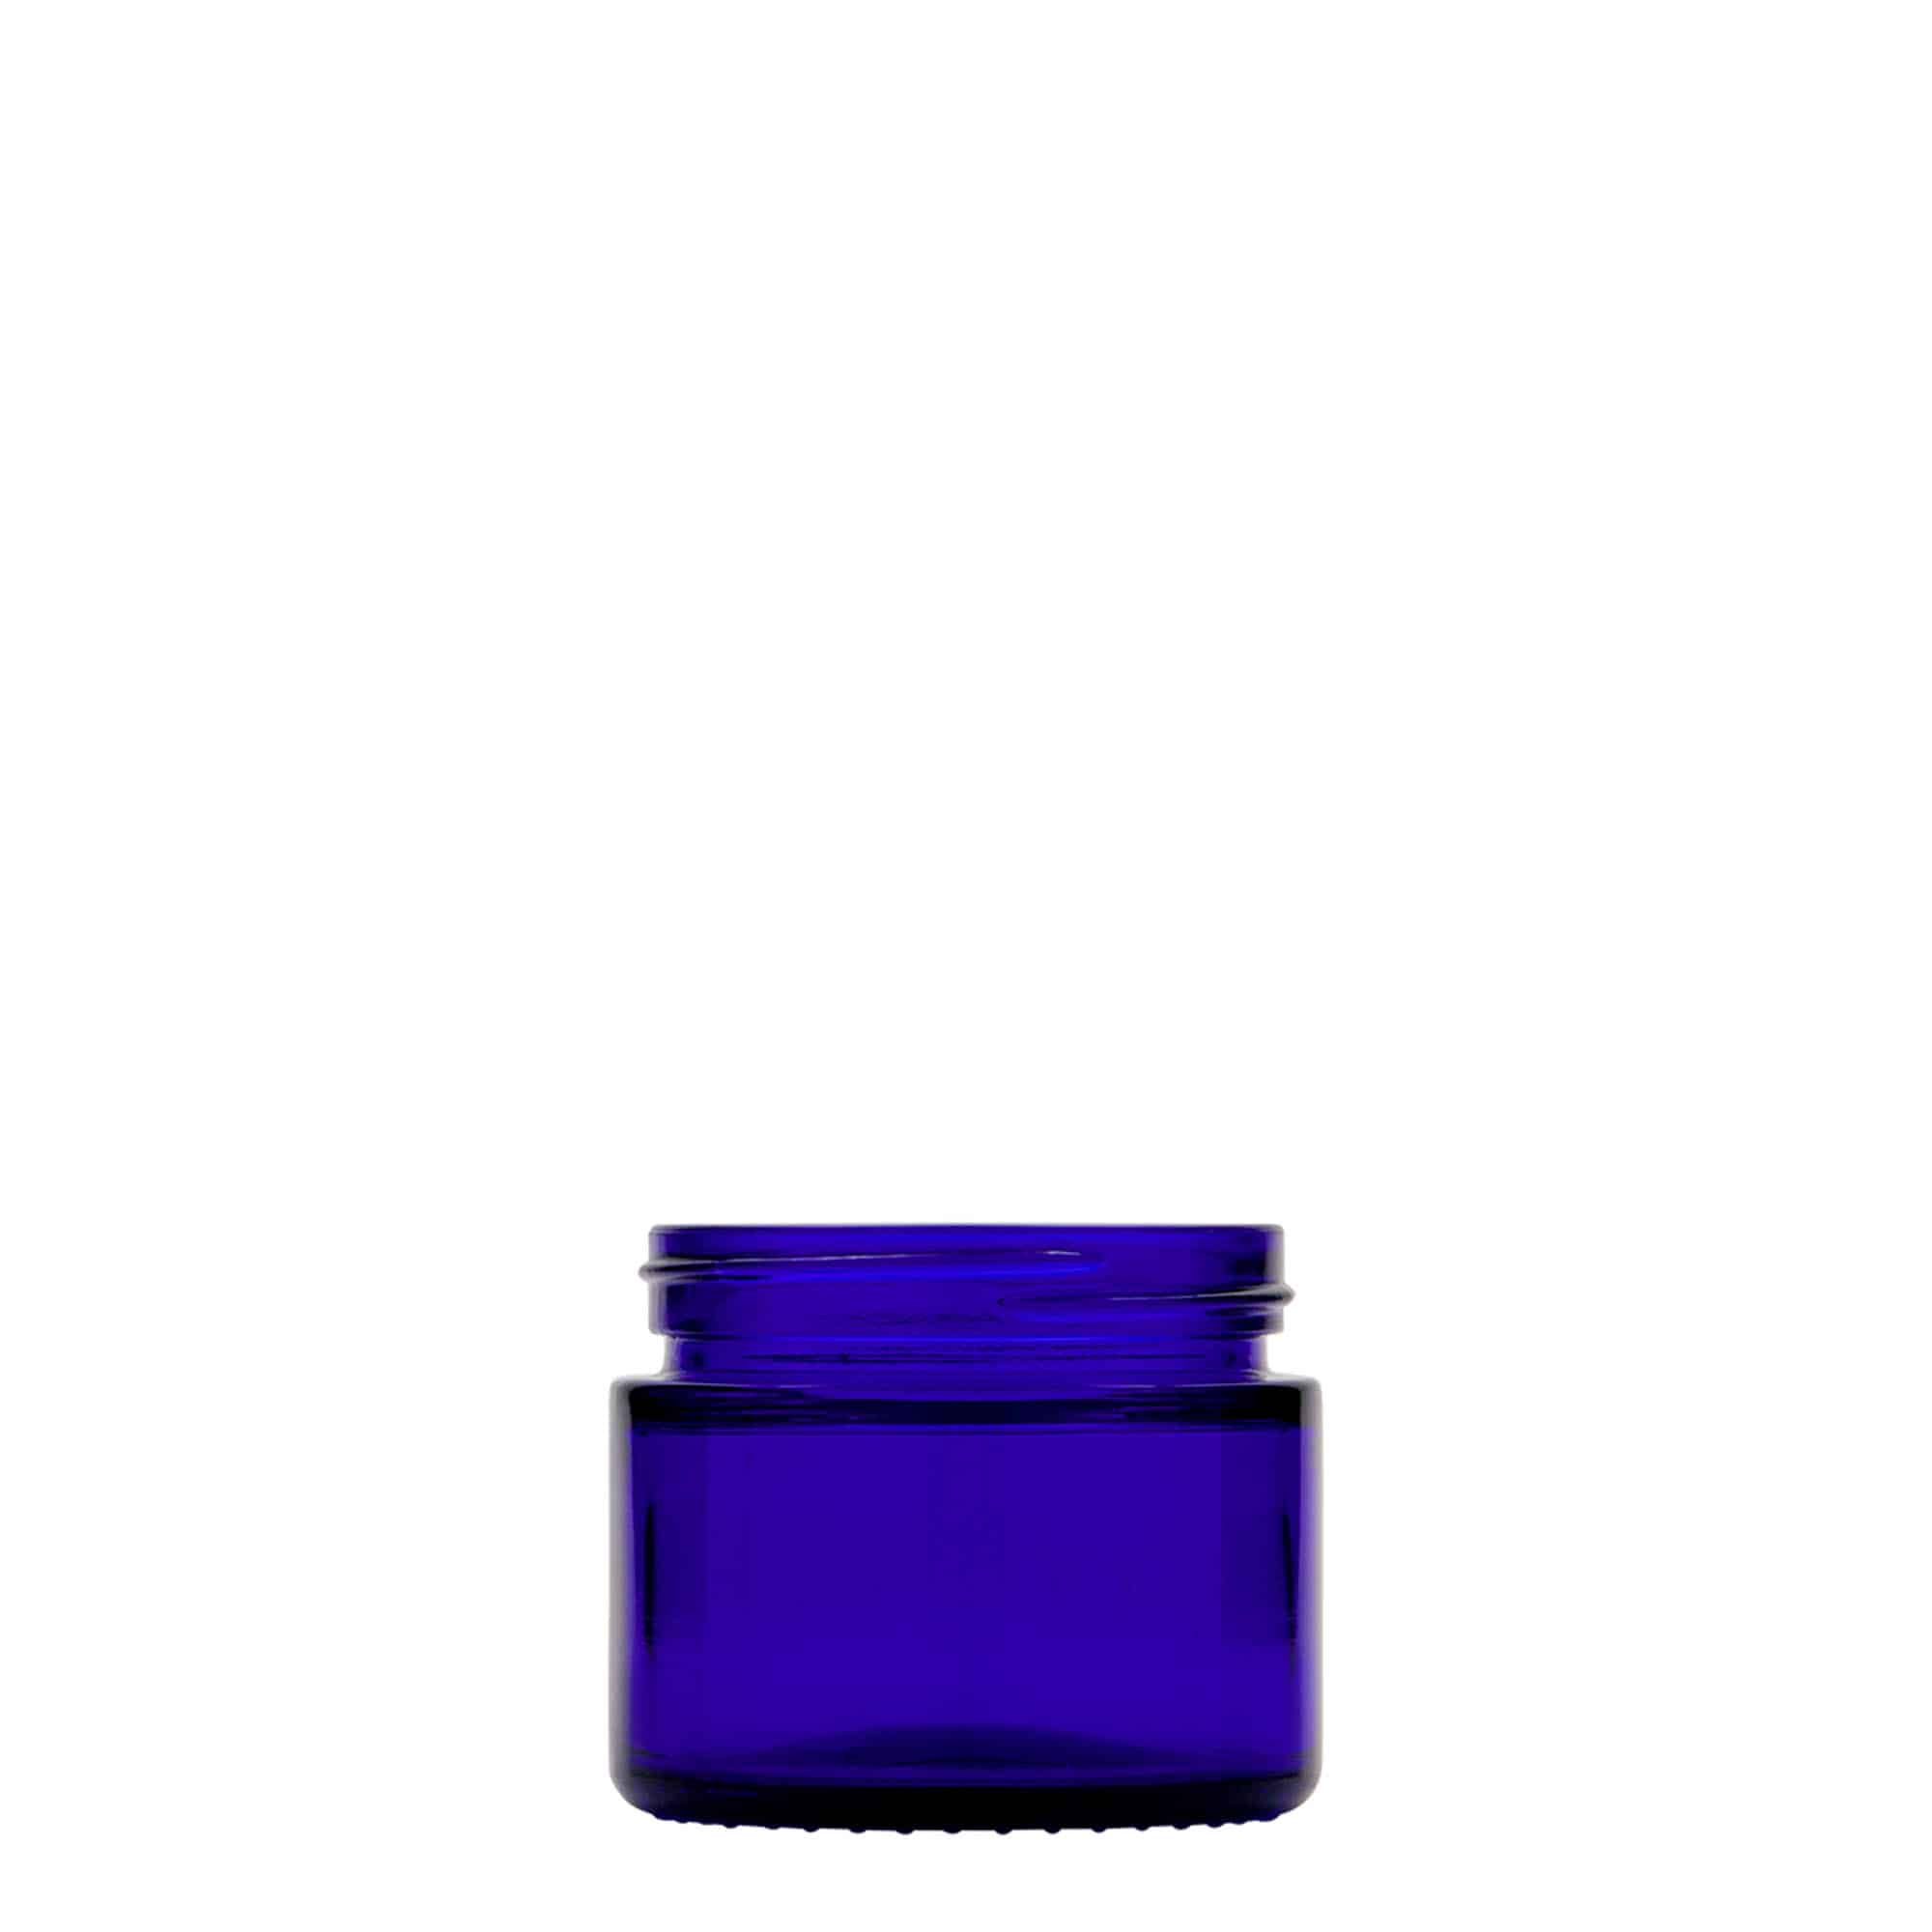 50 ml pojemnik na kosmetyki 'Blue Edition', szkło, kolor błękit królewski, zamknięcie: zakrętka